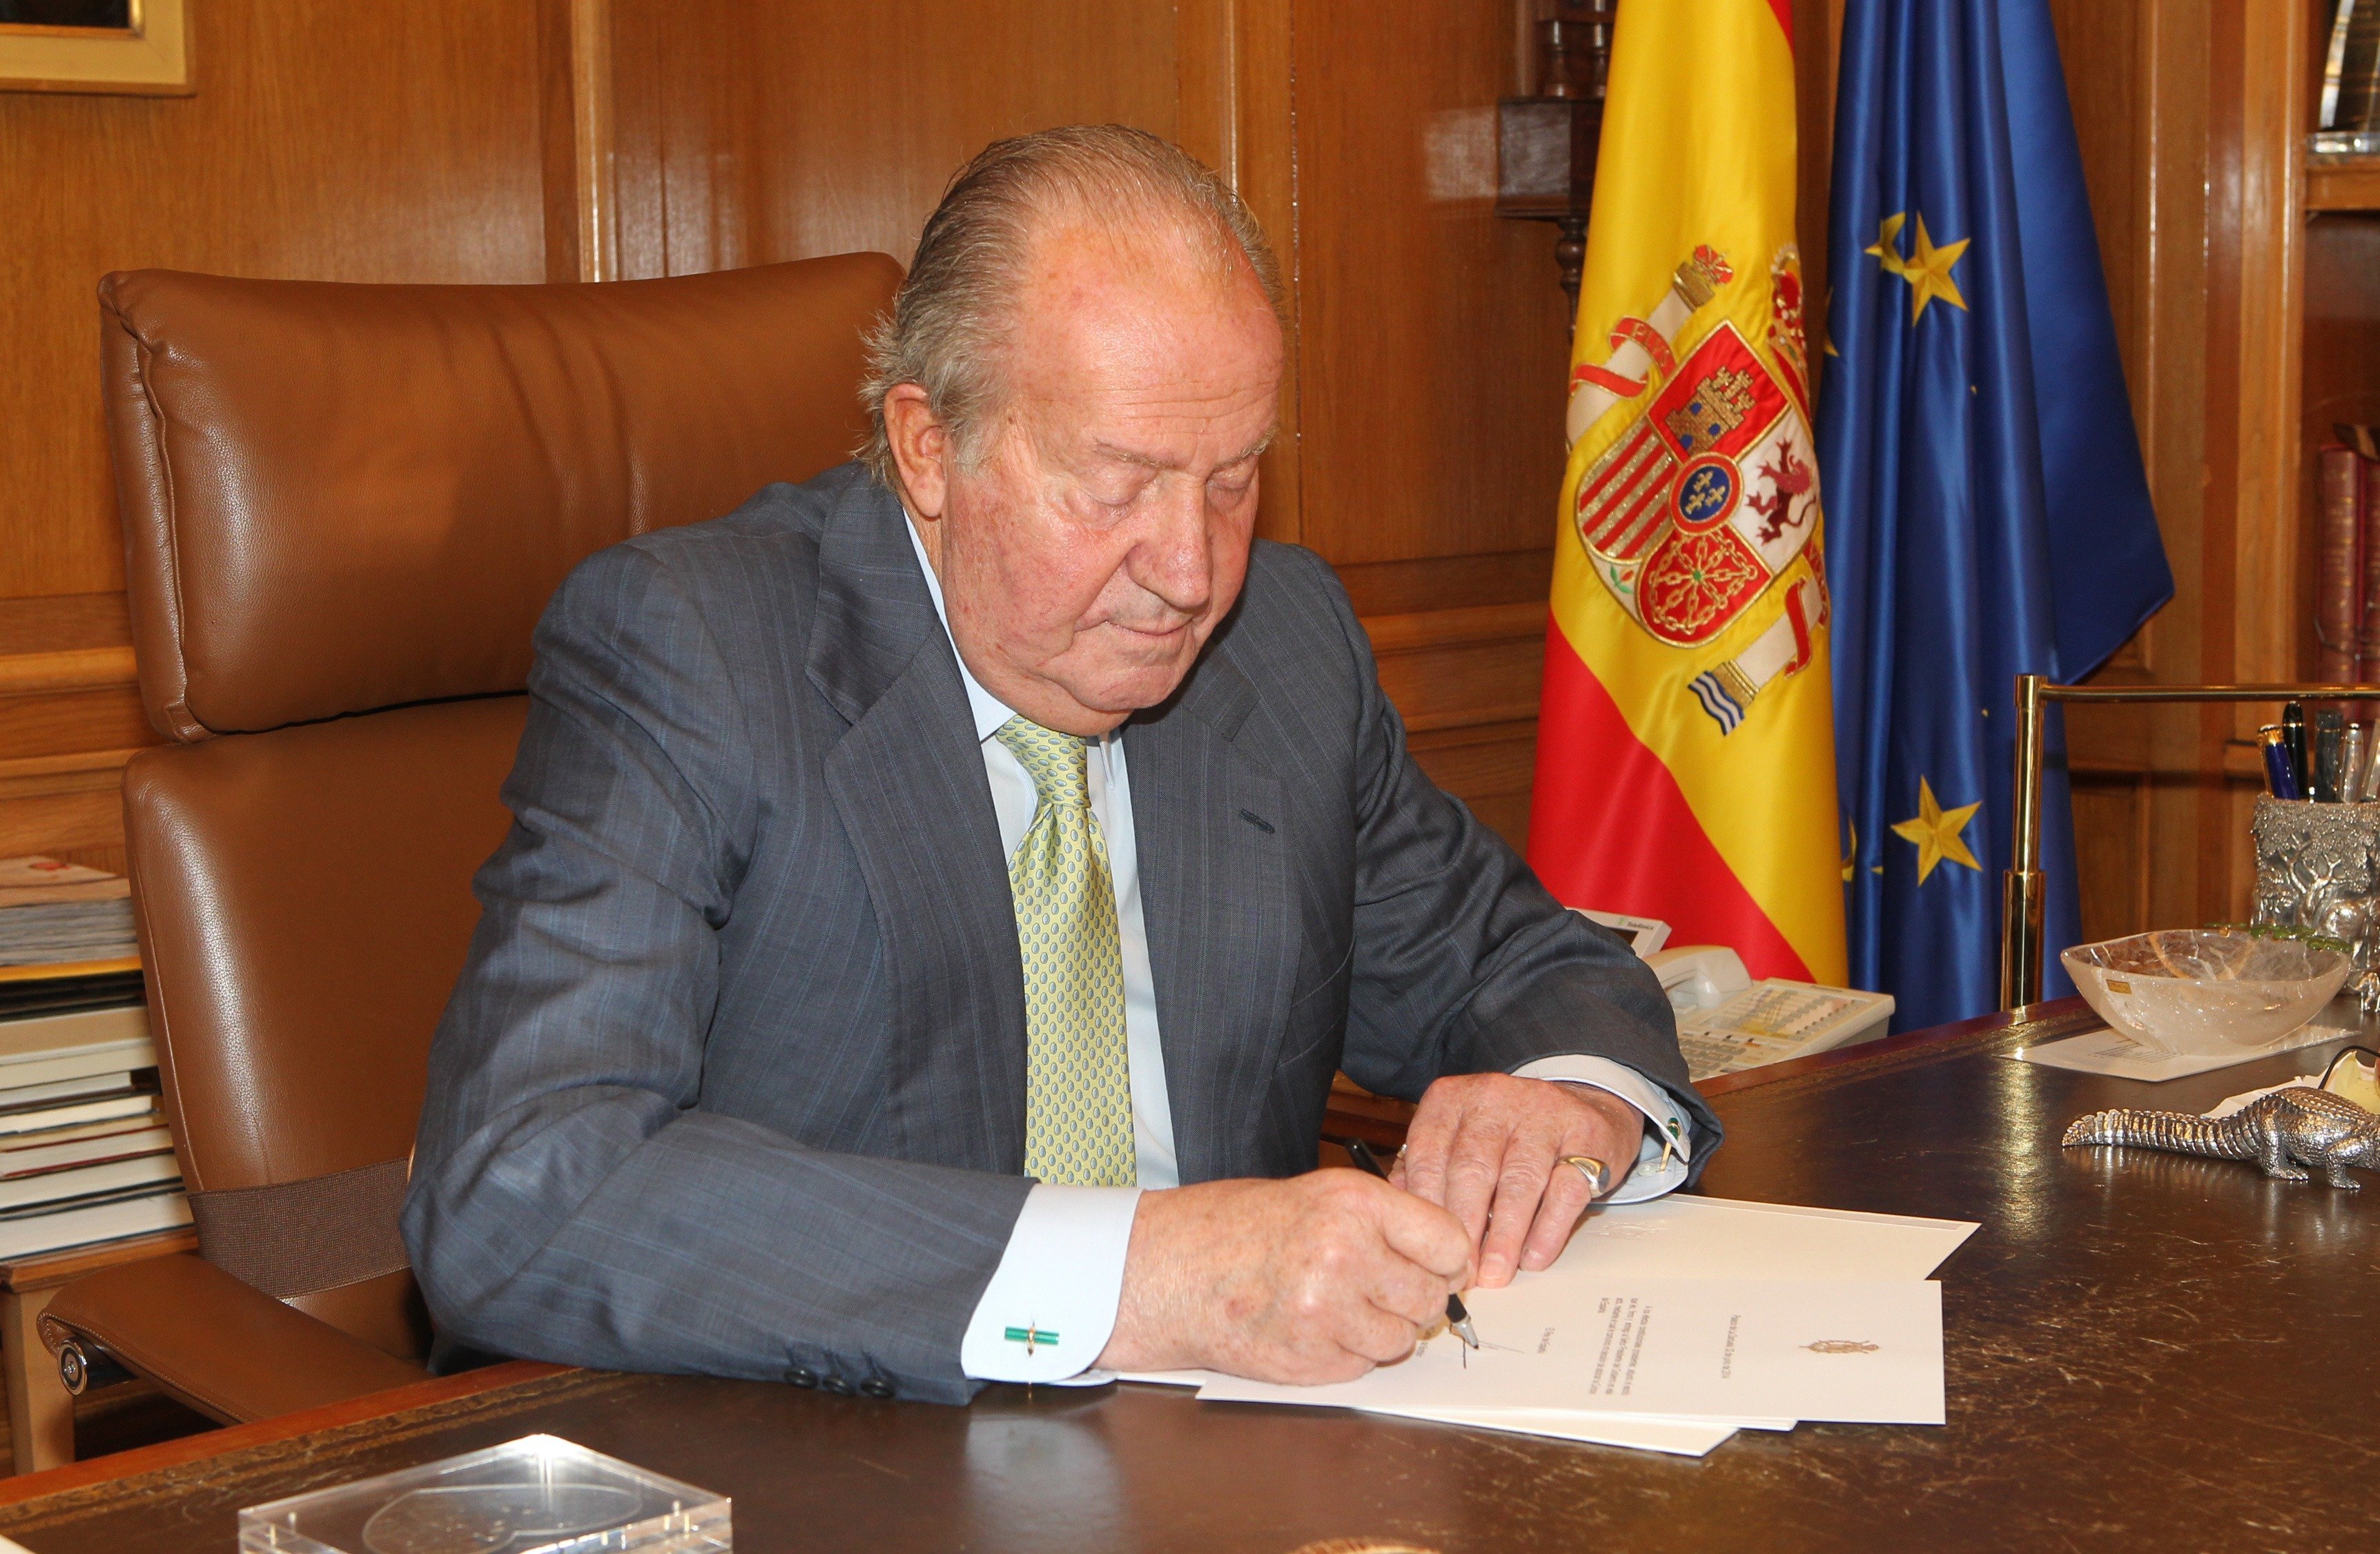 El rey Juan Carlos de España firma documentos para confirmar su abdicación el 2 de junio de 2014 en Madrid, España. | Foto: Getty Images